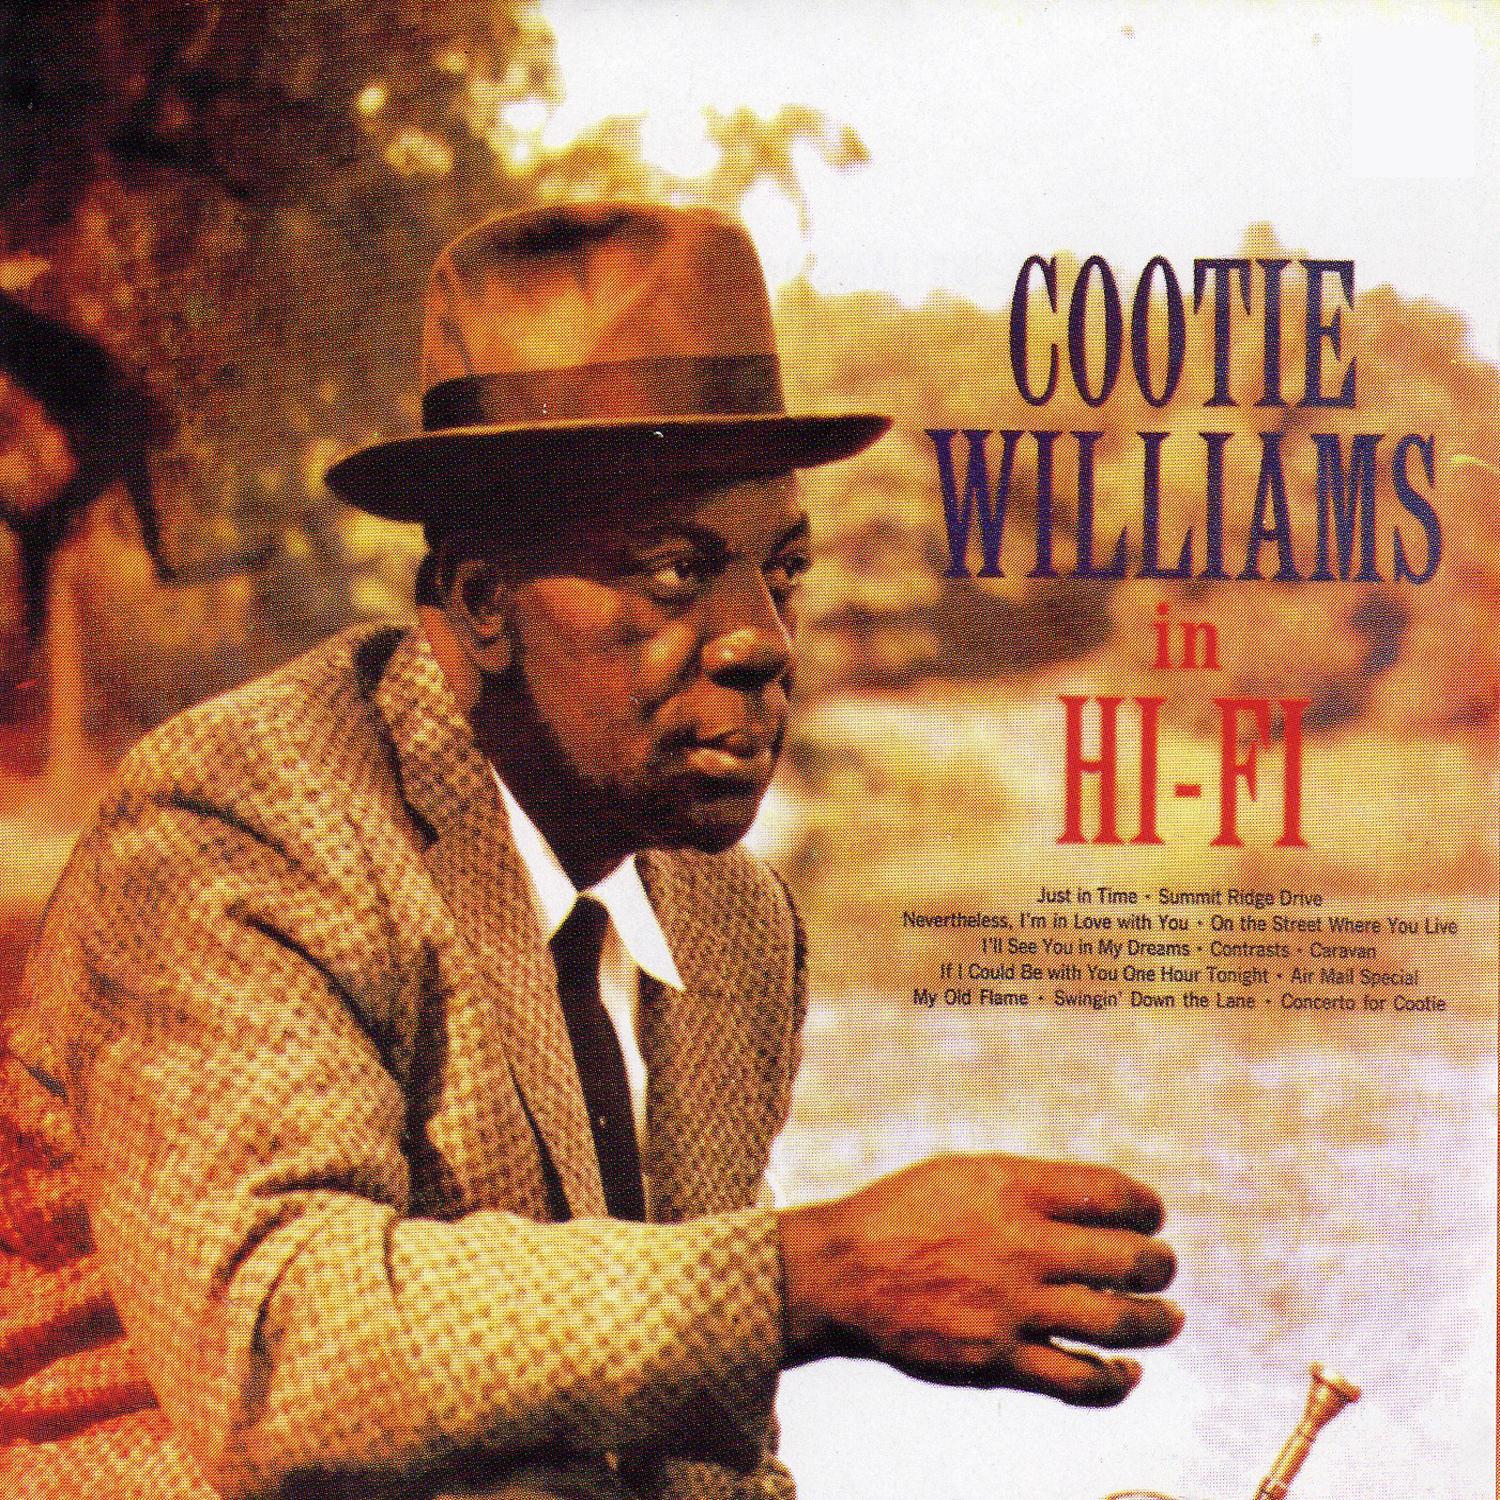 Cootie Williams in Hi-Fi